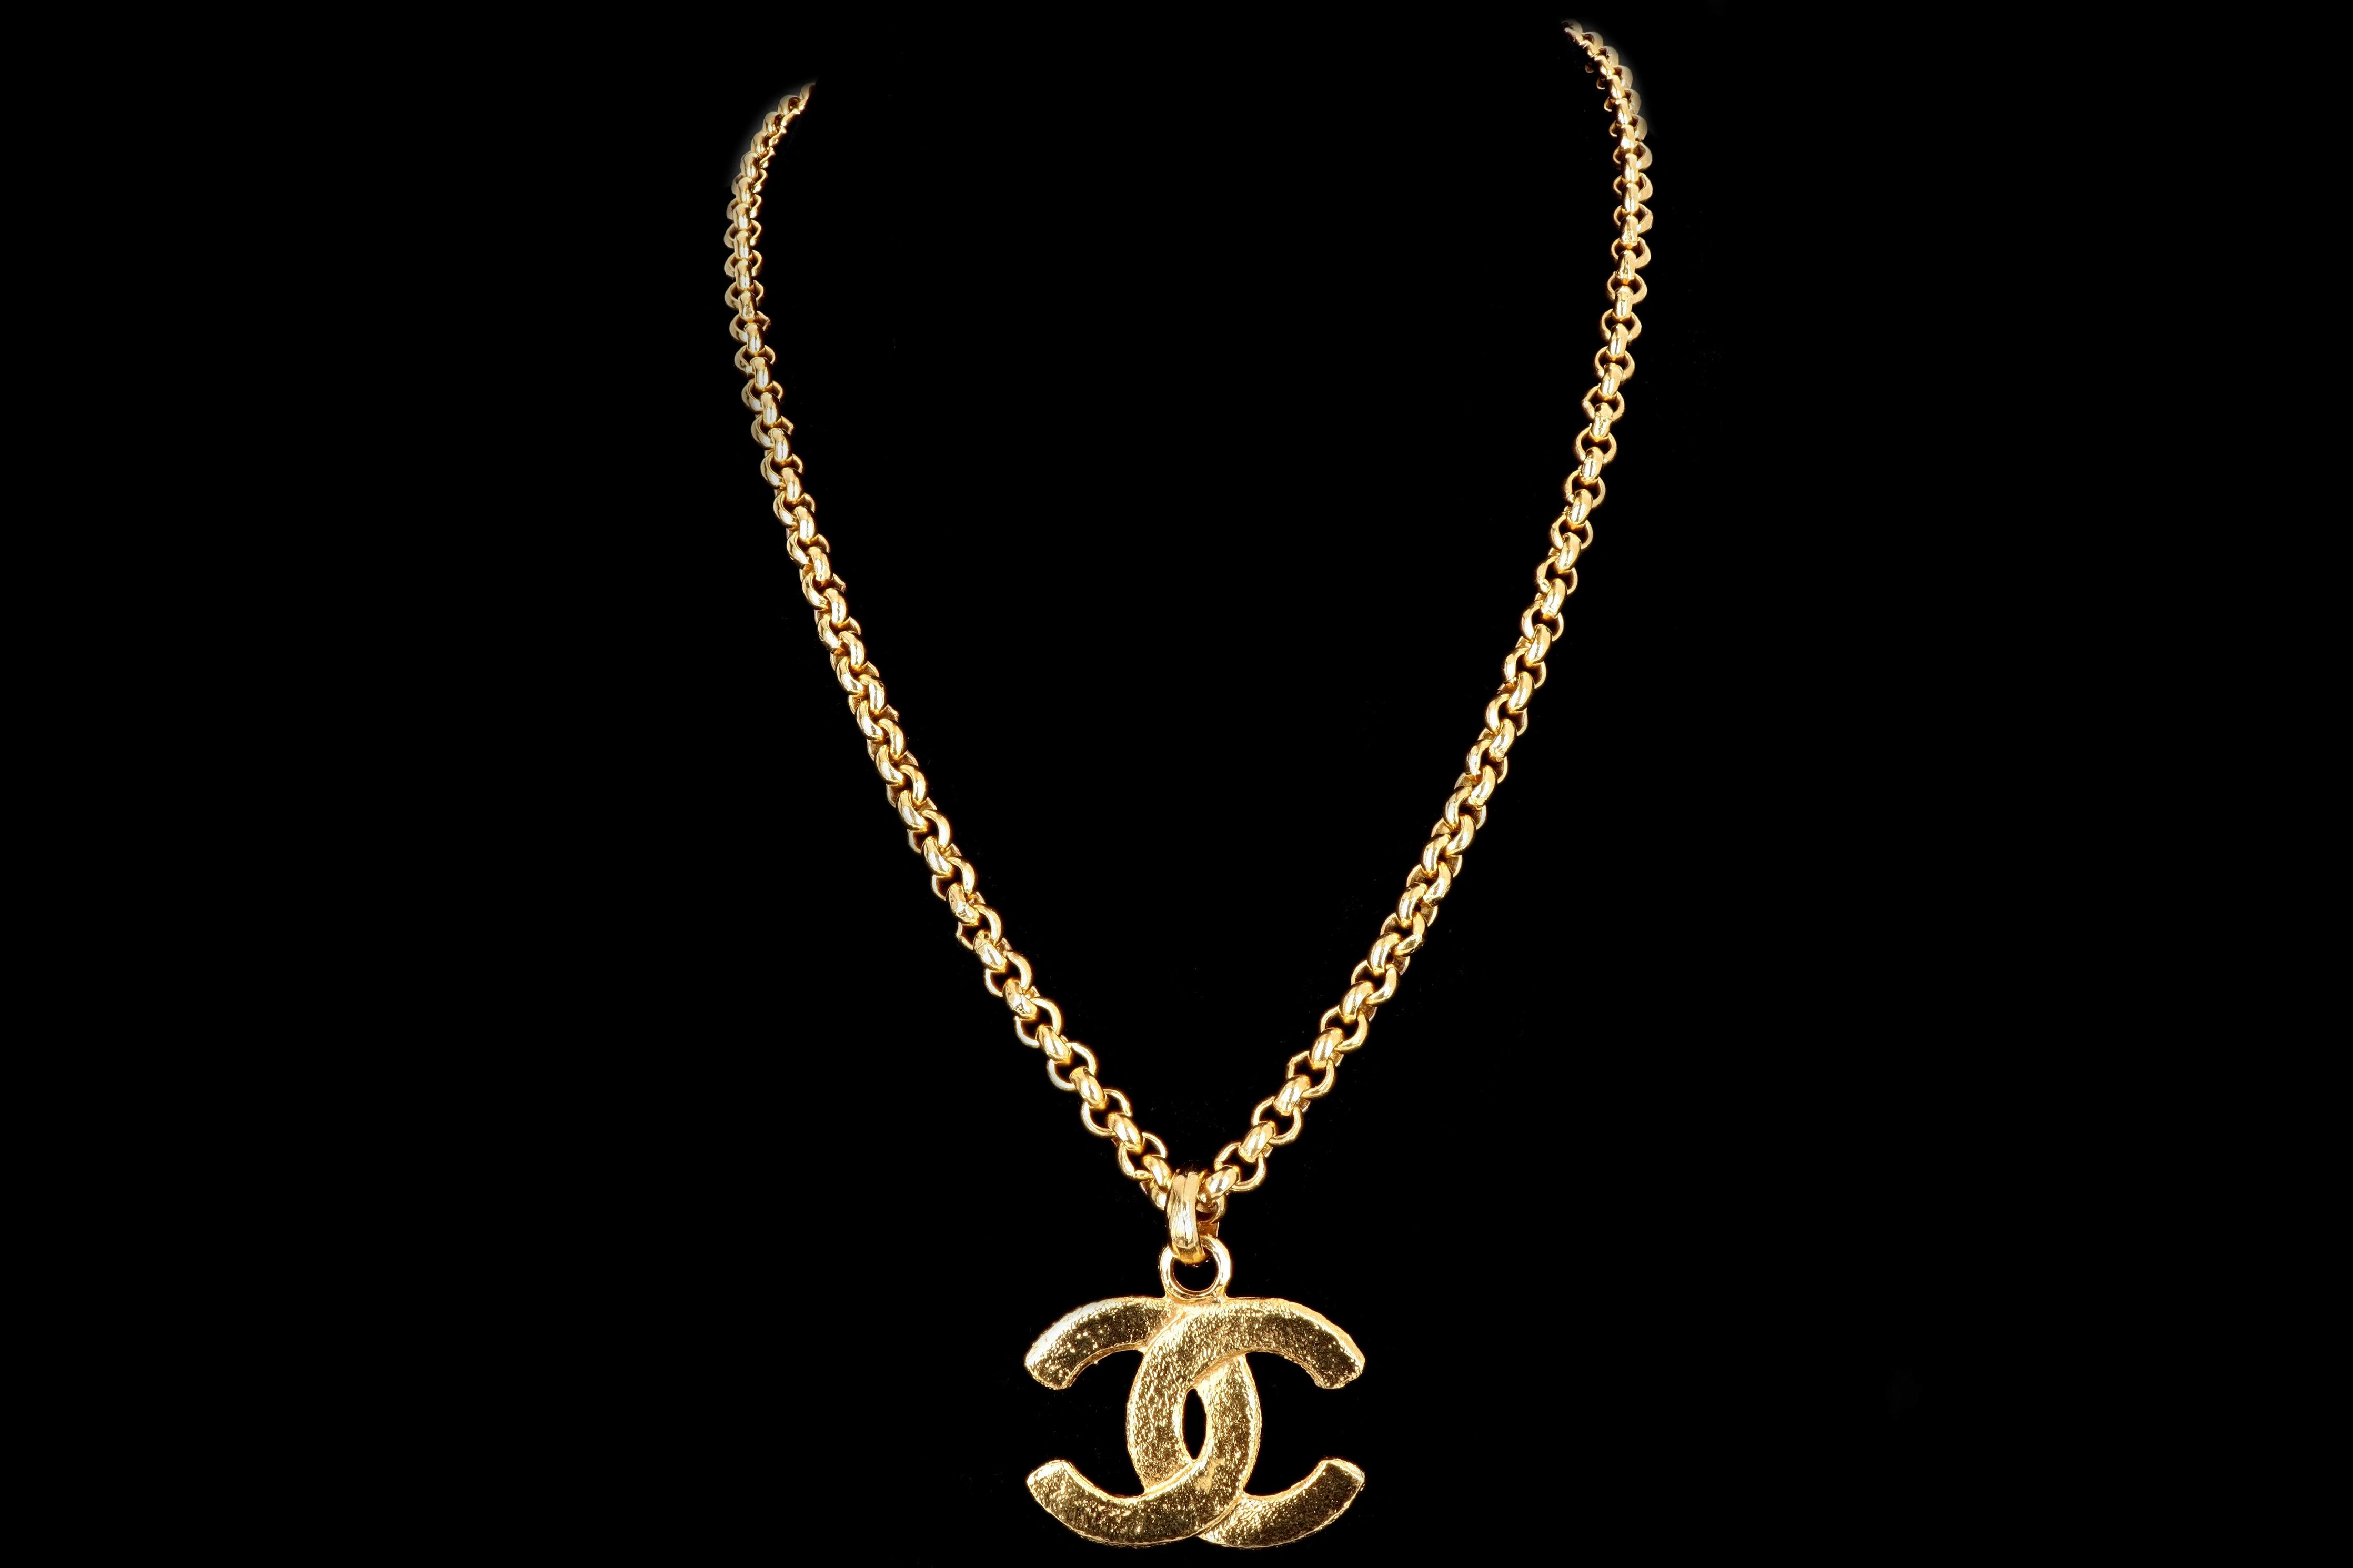 Vintage Chanel Necklace Mini Gold CC Logo